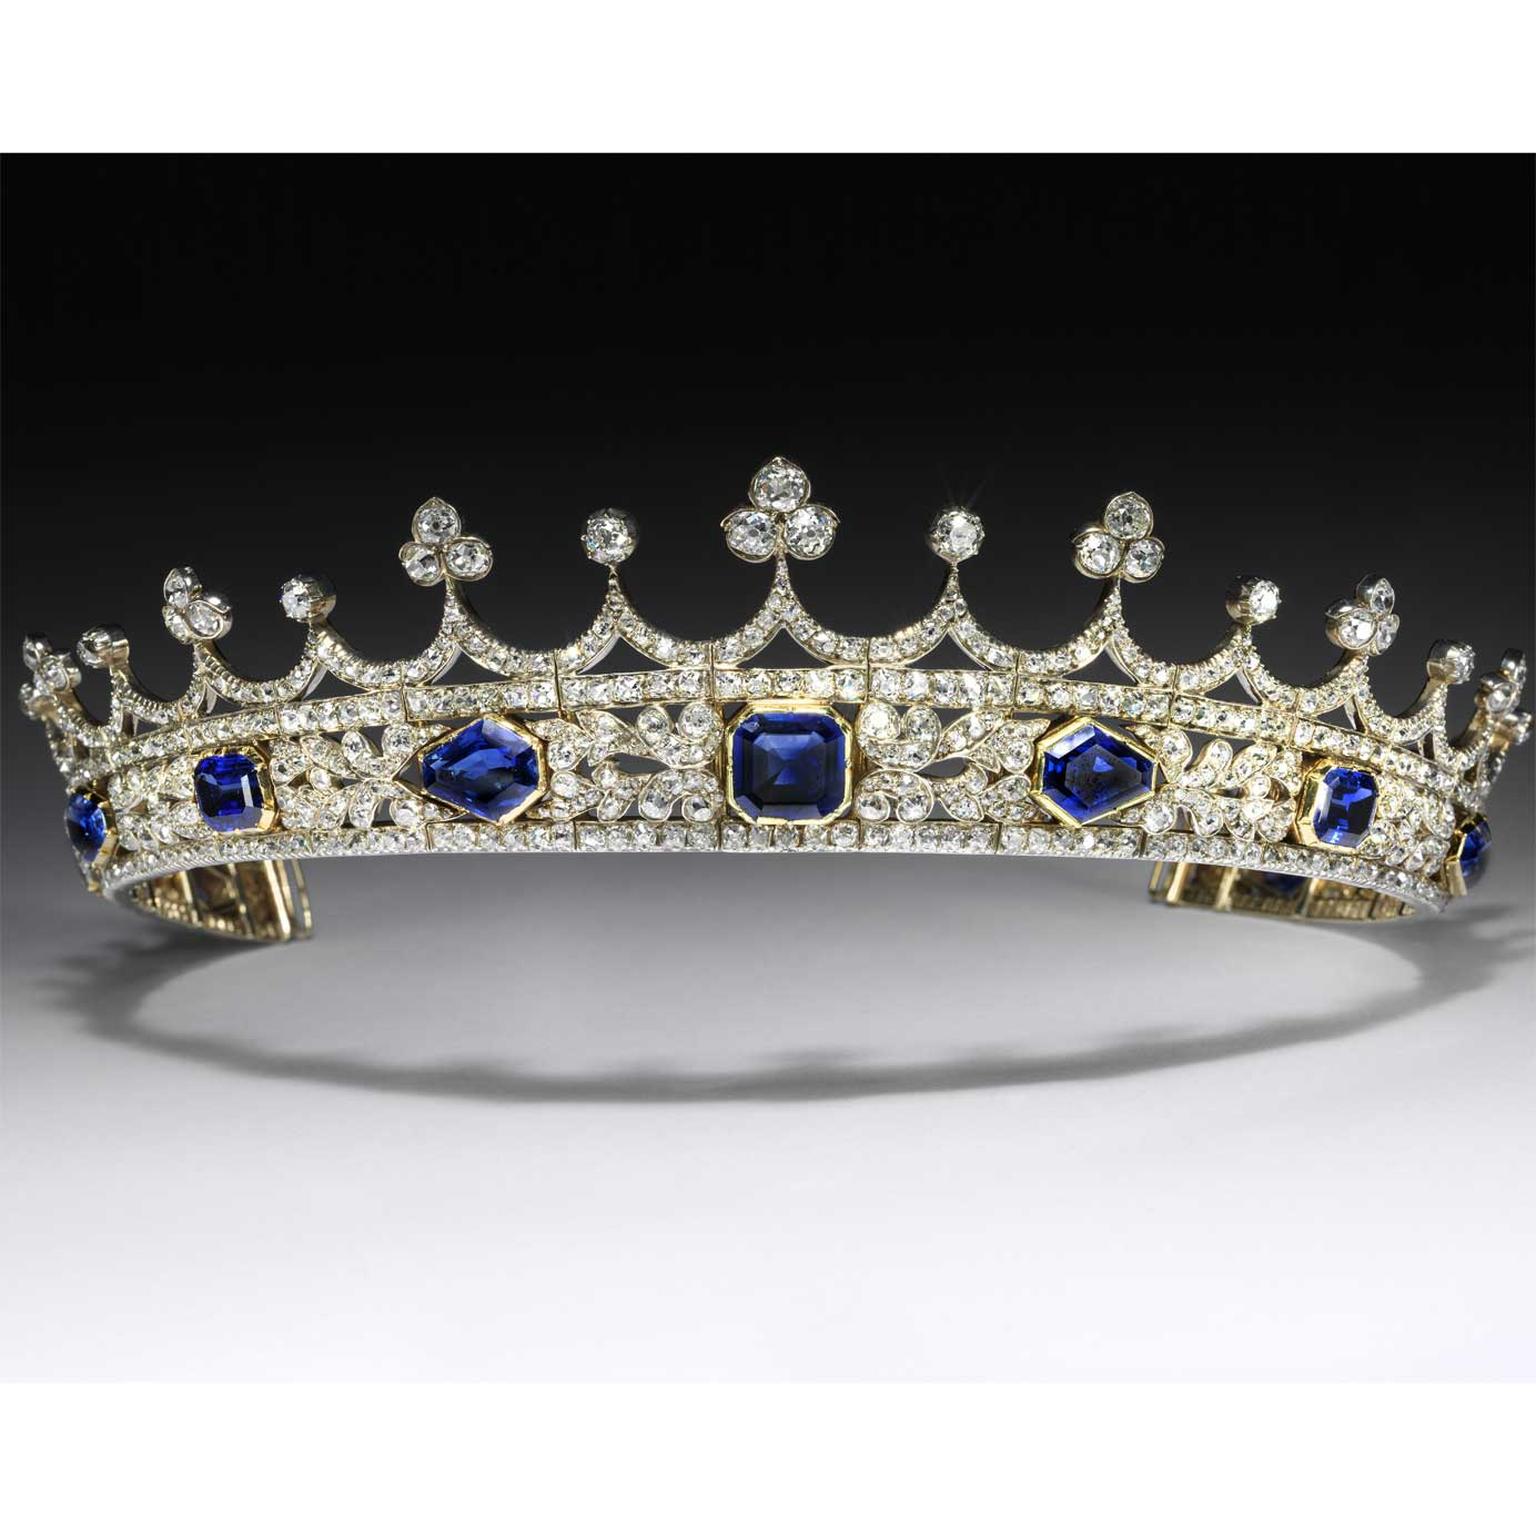  Queen Victoria sapphire and diamond coronet